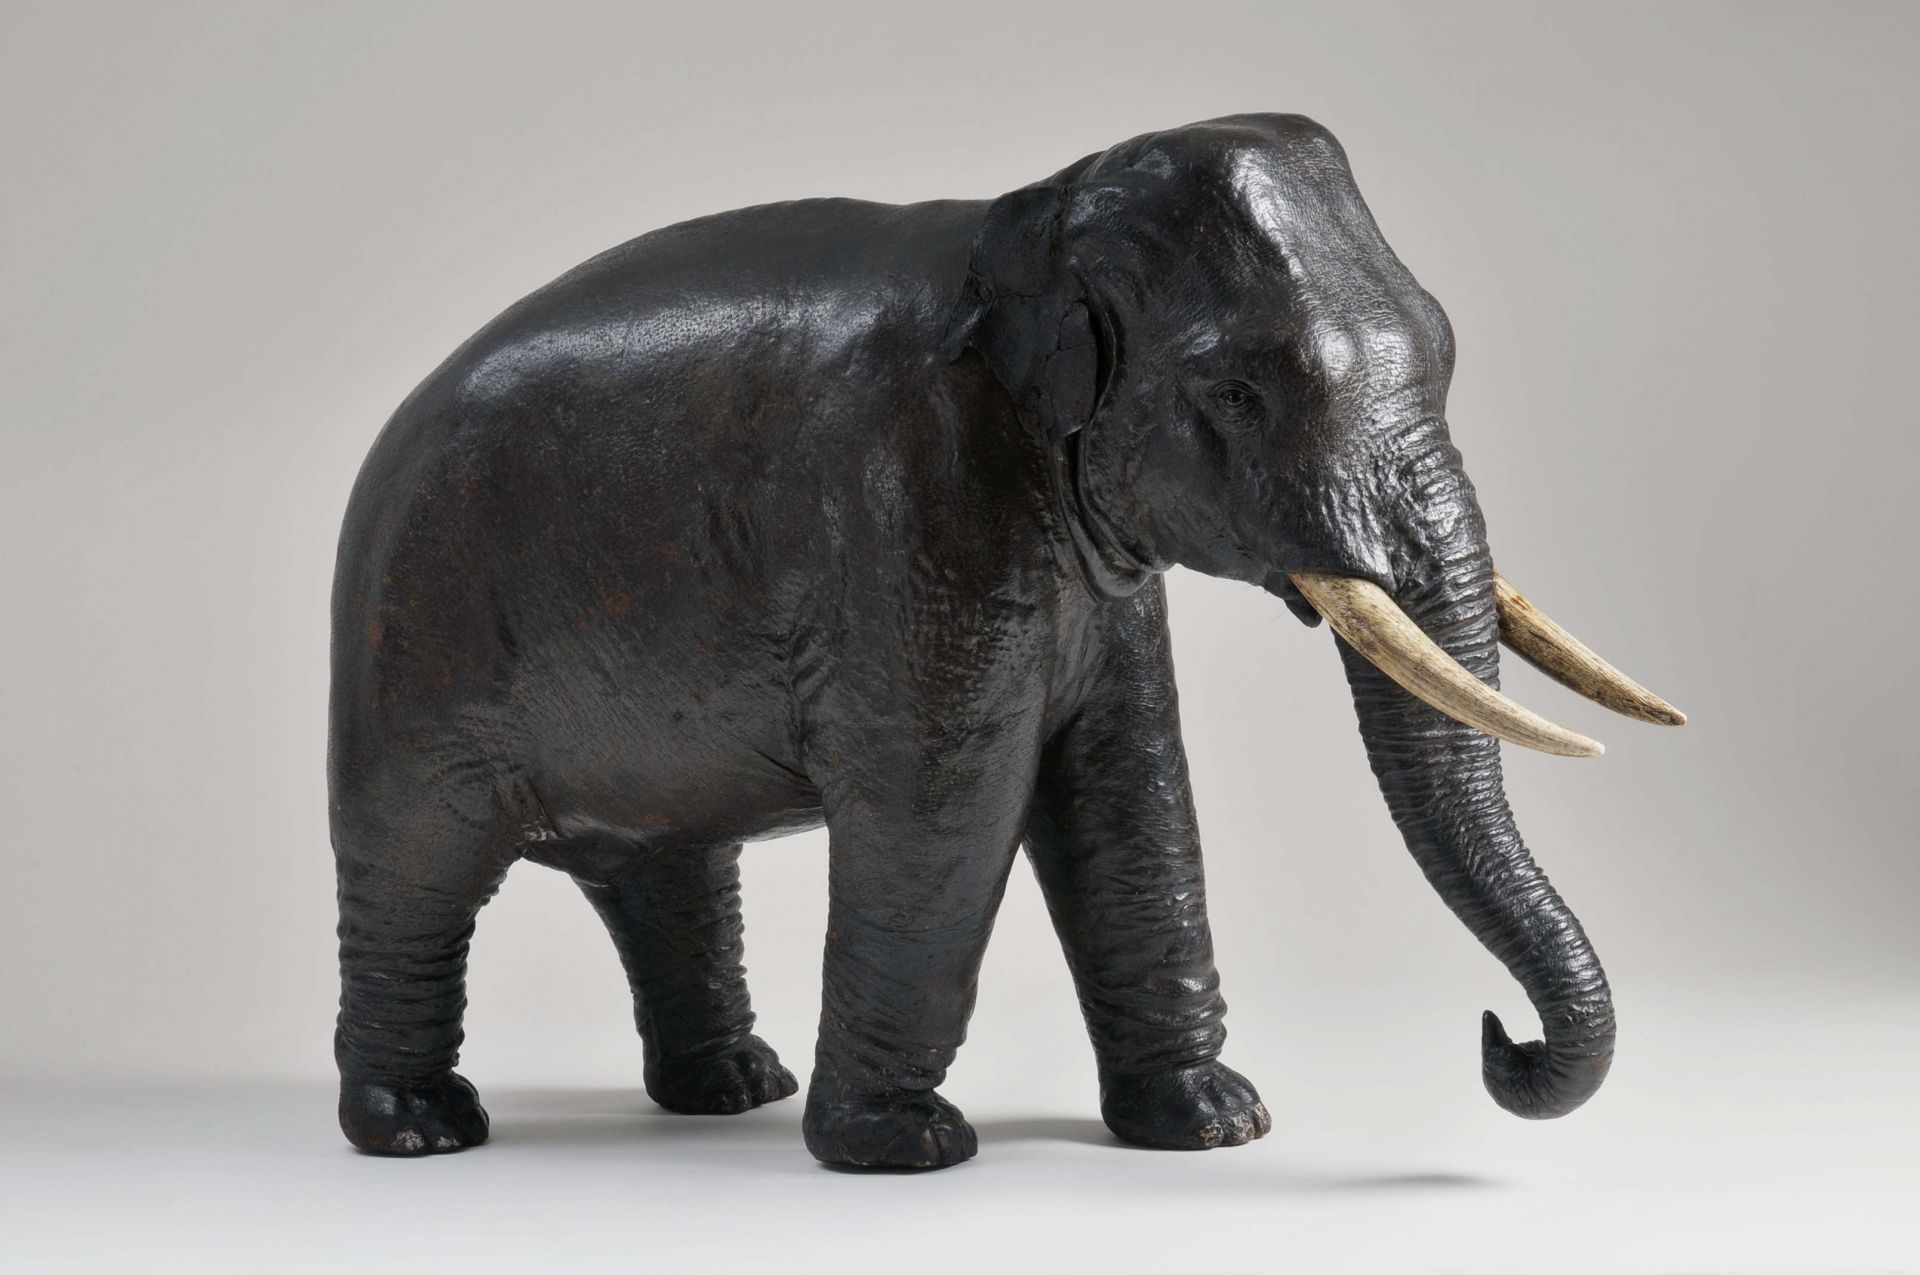 Tierplastik eines Elefanten, vermutlich Europa, 19. Jahrhundert © DLM, C. Perl-Appl